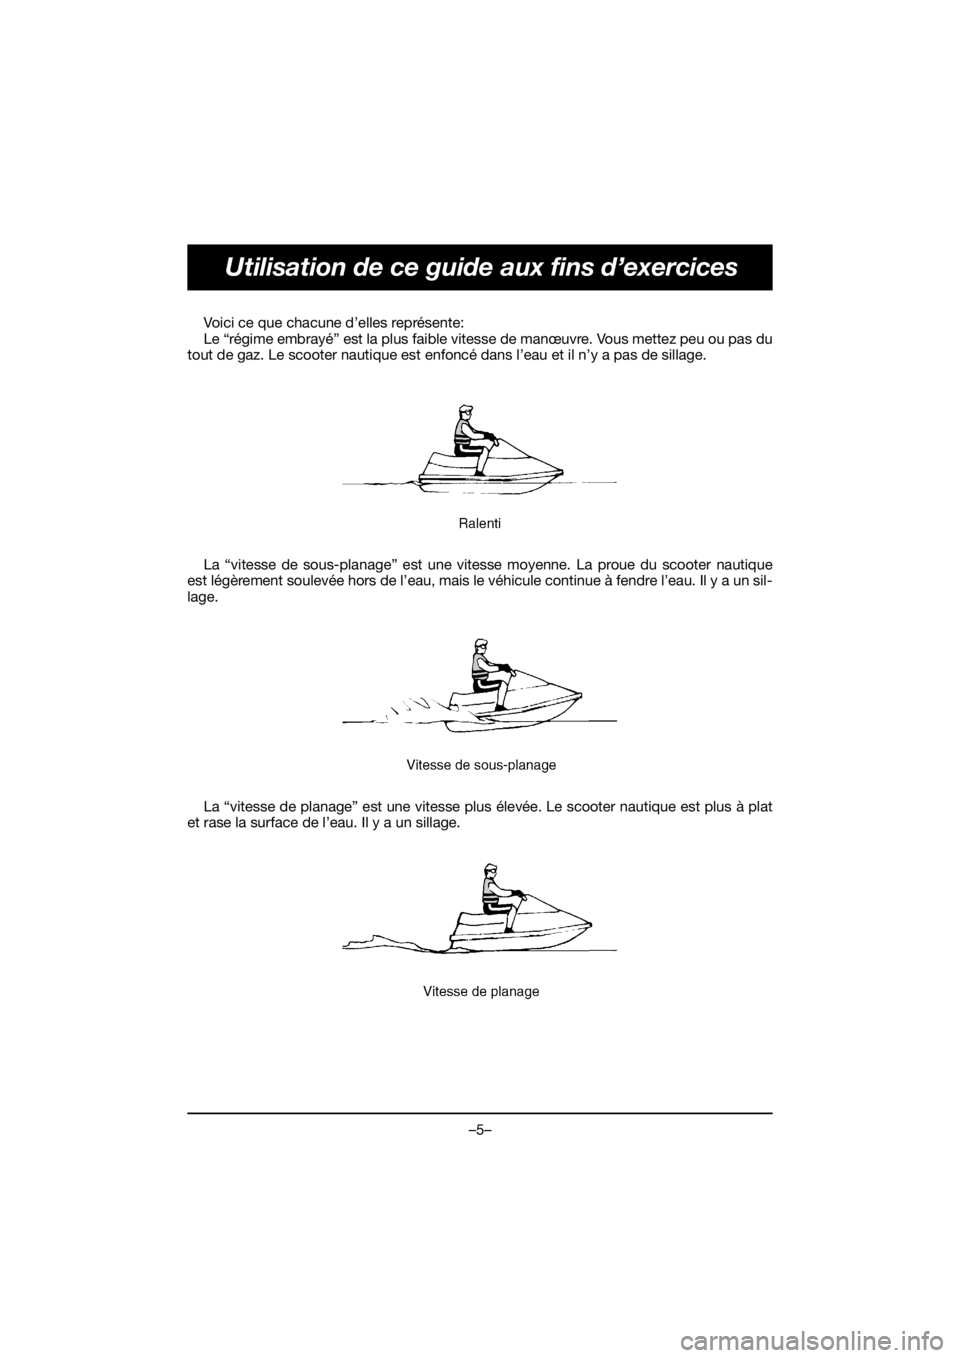 YAMAHA VX DELUXE 2019  Manual de utilização (in Portuguese) –5–
Utilisation de ce guide aux fins d’exercices
Voici ce que chacune d’elles représente: 
Le “régime embrayé” est la plus faible vitesse de manœuvre. Vous mettez peu ou pas du
tout de